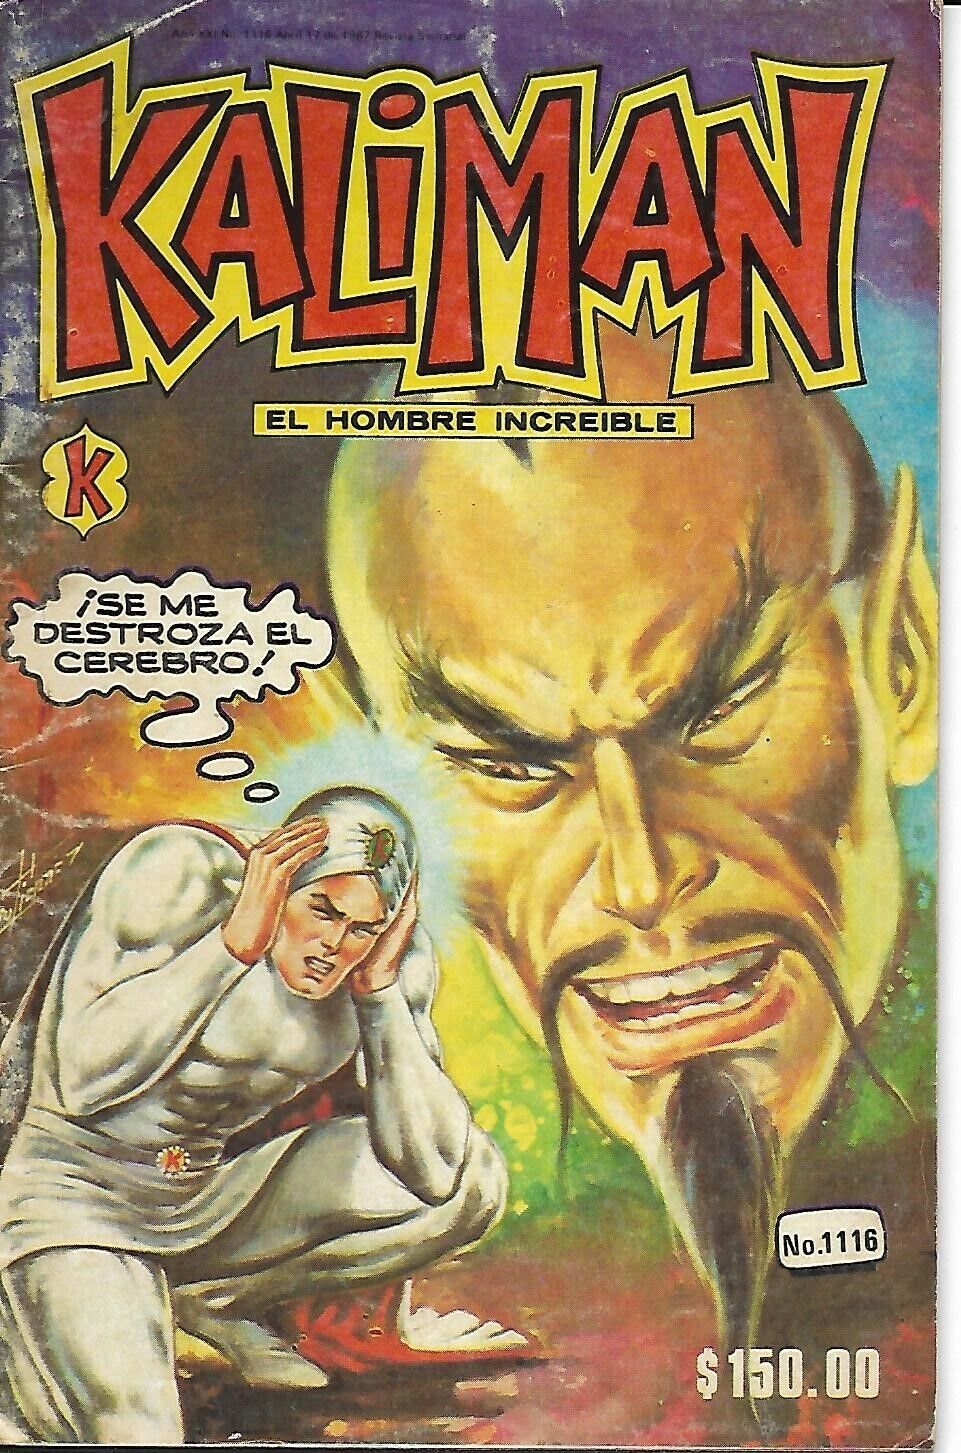 Kaliman El Hombre Increible #1116 - Abril 17, 1987